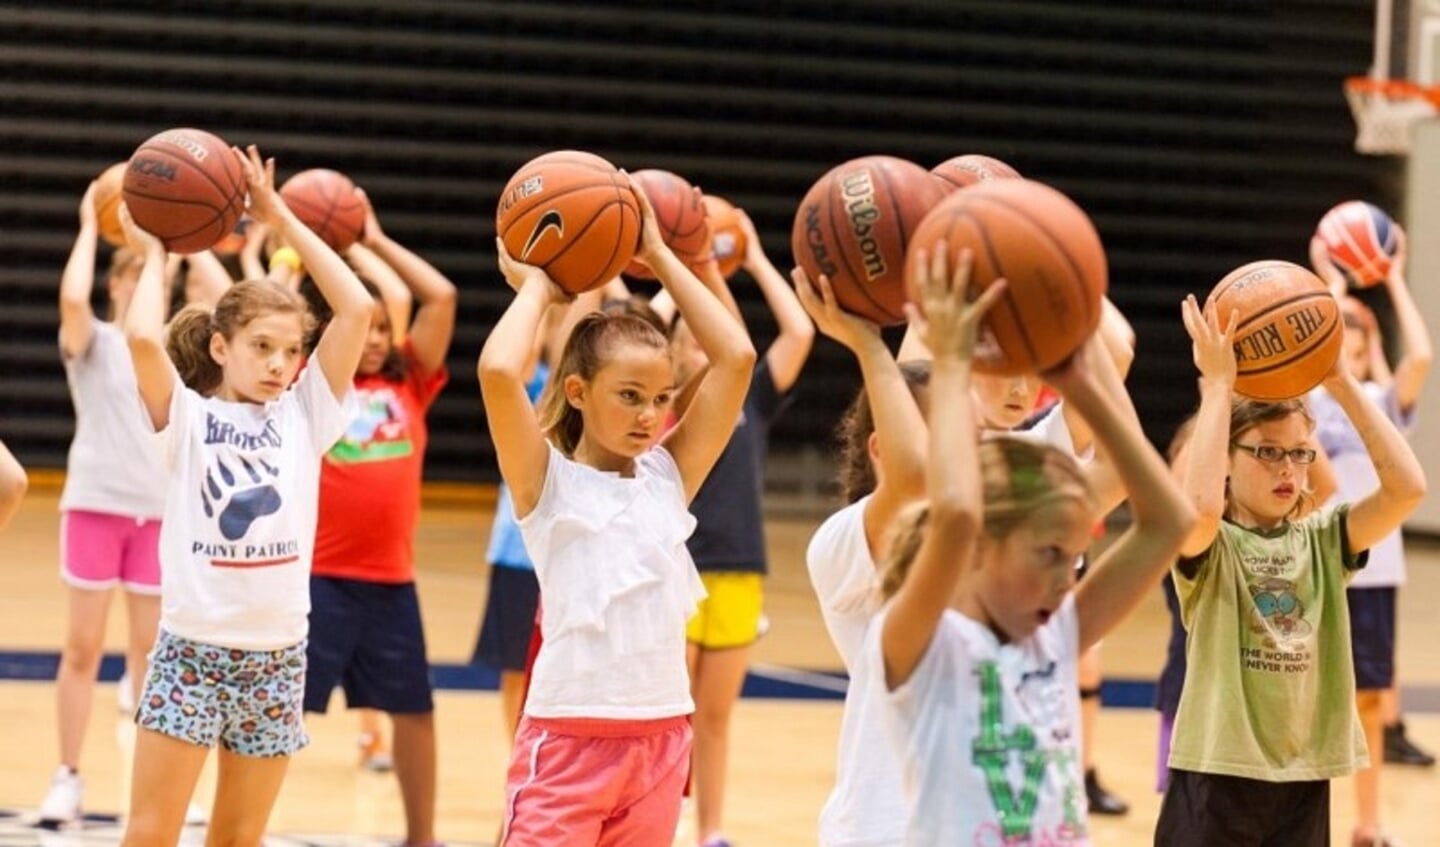 Basketbal. De leukste teamsport voor jongens en meiden.